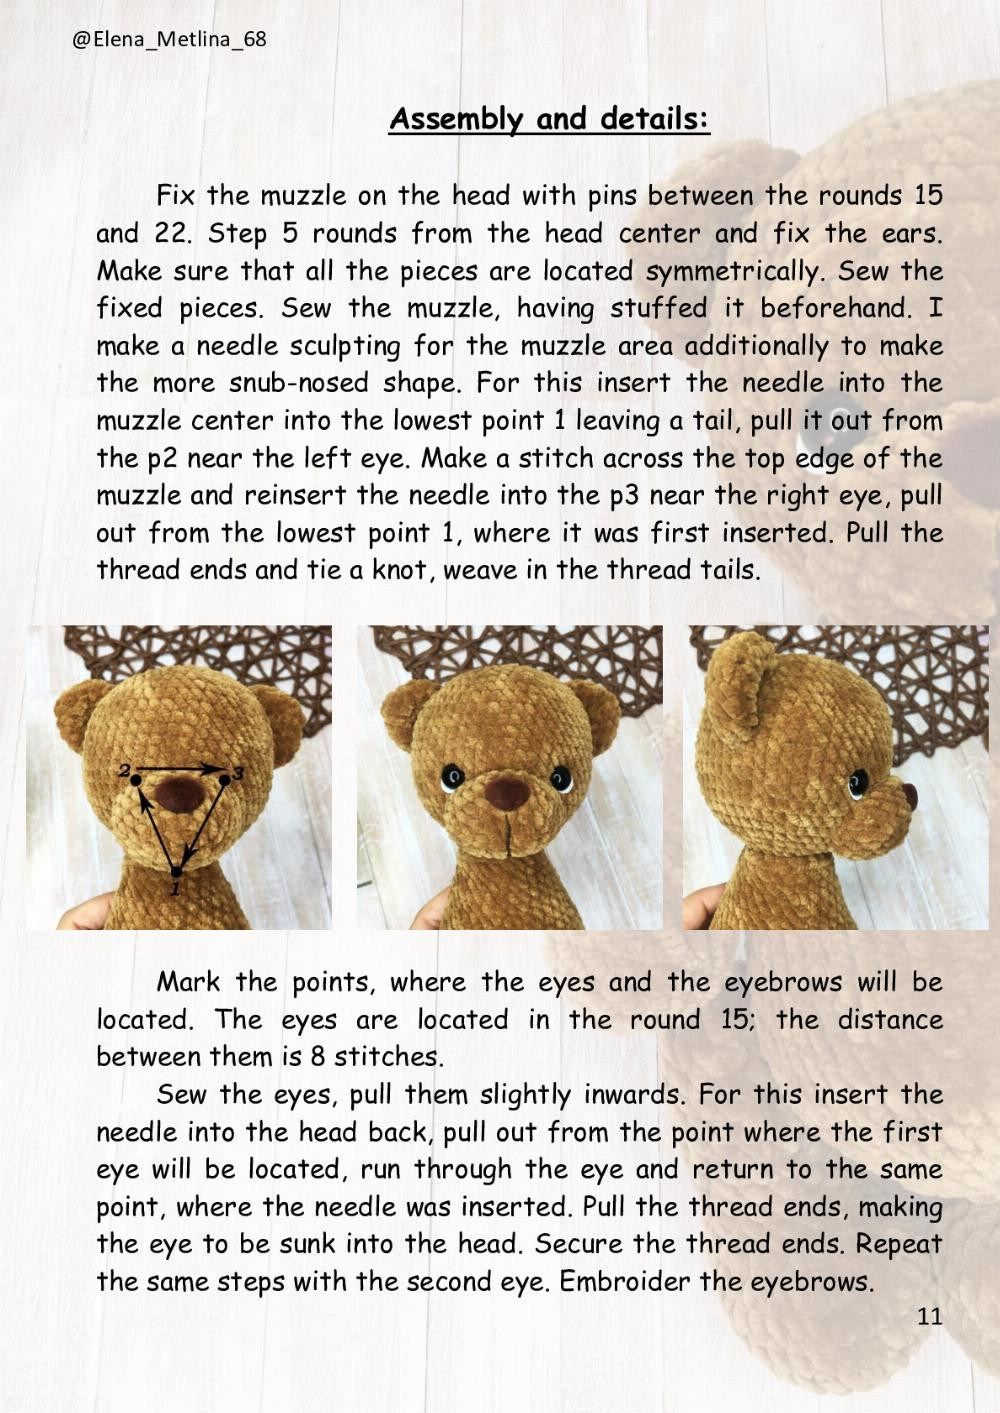 TEDDY brown BEAR crochet pattern